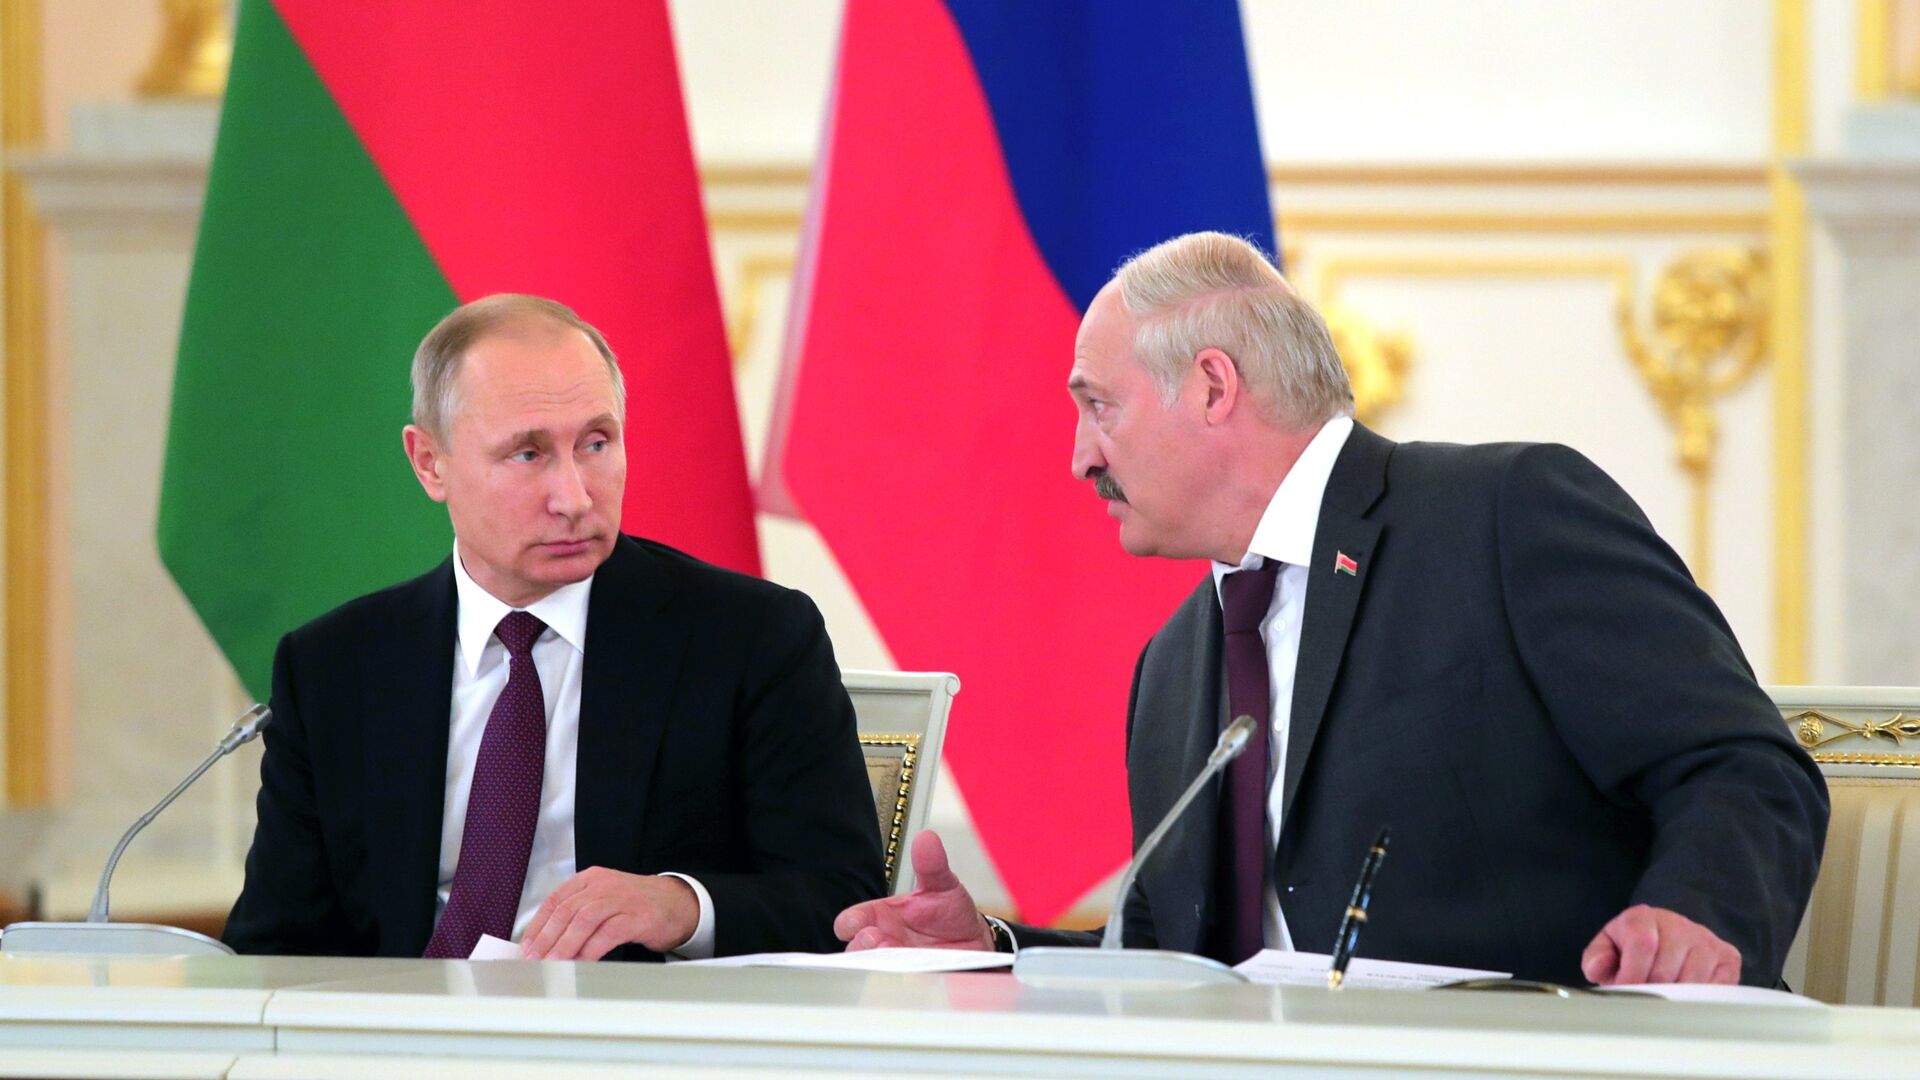 Putin Lukashenkodan ochko‘zlik qilmaslikni va Rossiyaga tuxum berishni so‘radi